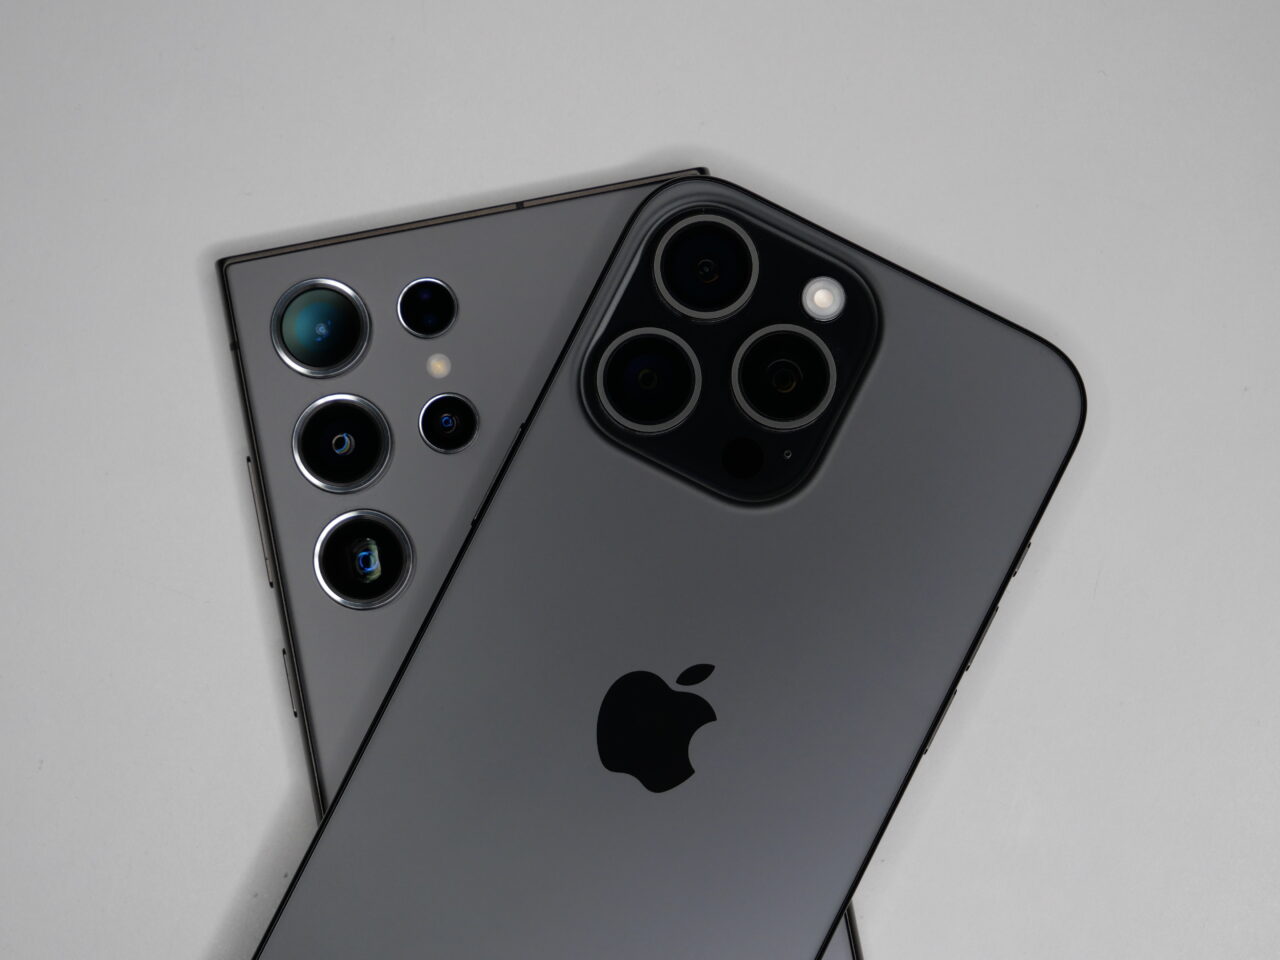 Dois smartphones sobre um fundo branco, com câmeras traseiras e o logotipo da Apple visível.